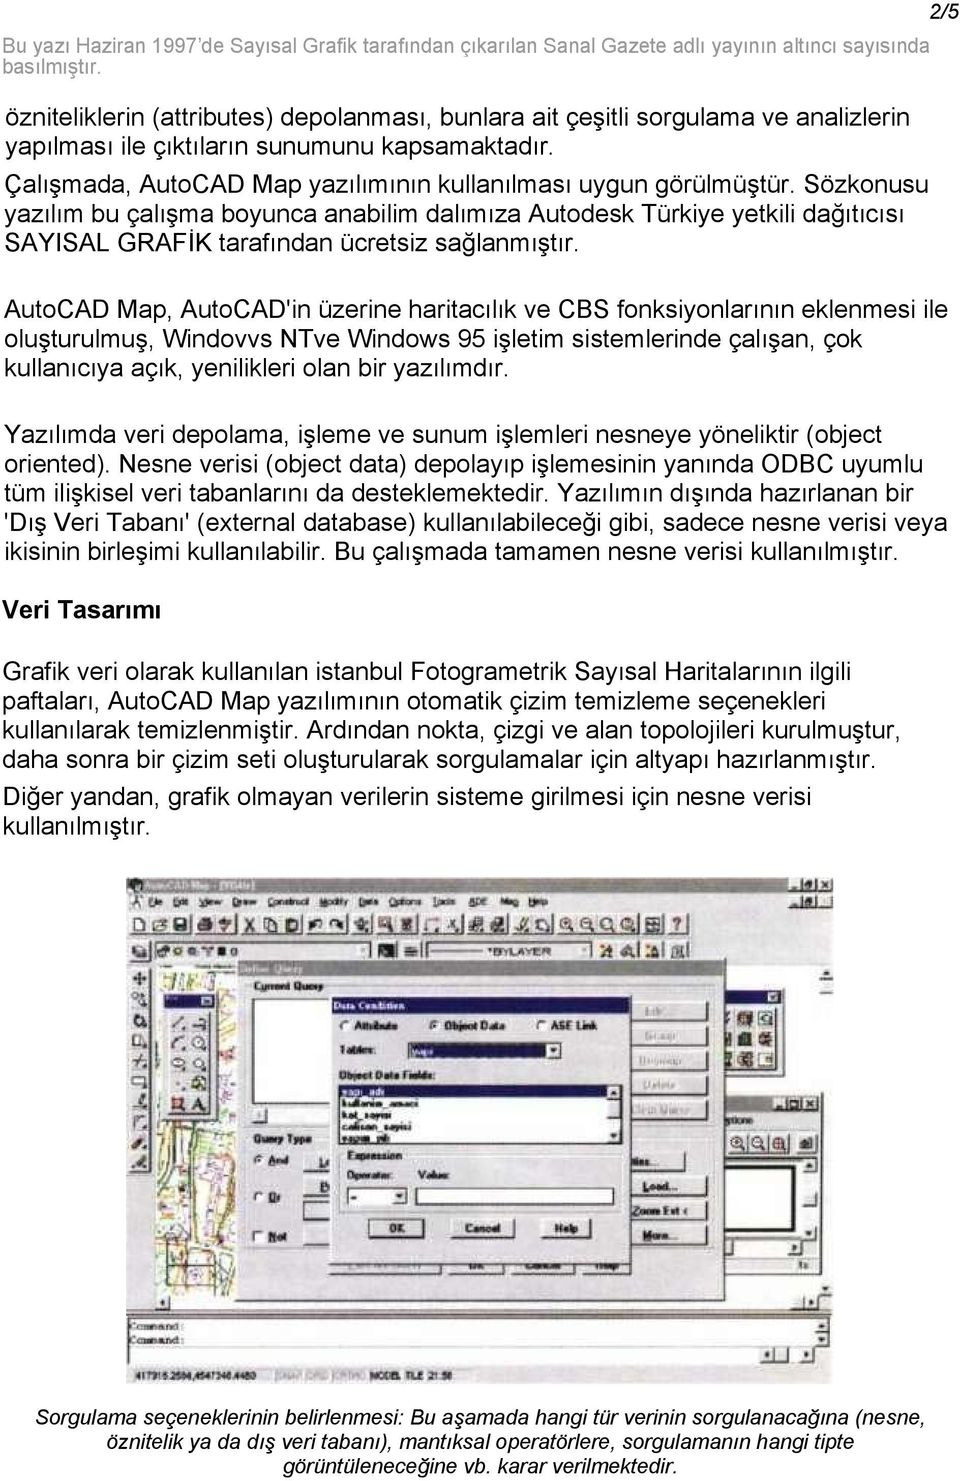 Sözkonusu yazılım bu çalışma boyunca anabilim dalımıza Autodesk Türkiye yetkili dağıtıcısı SAYISAL GRAFİK tarafından ücretsiz sağlanmıştır.